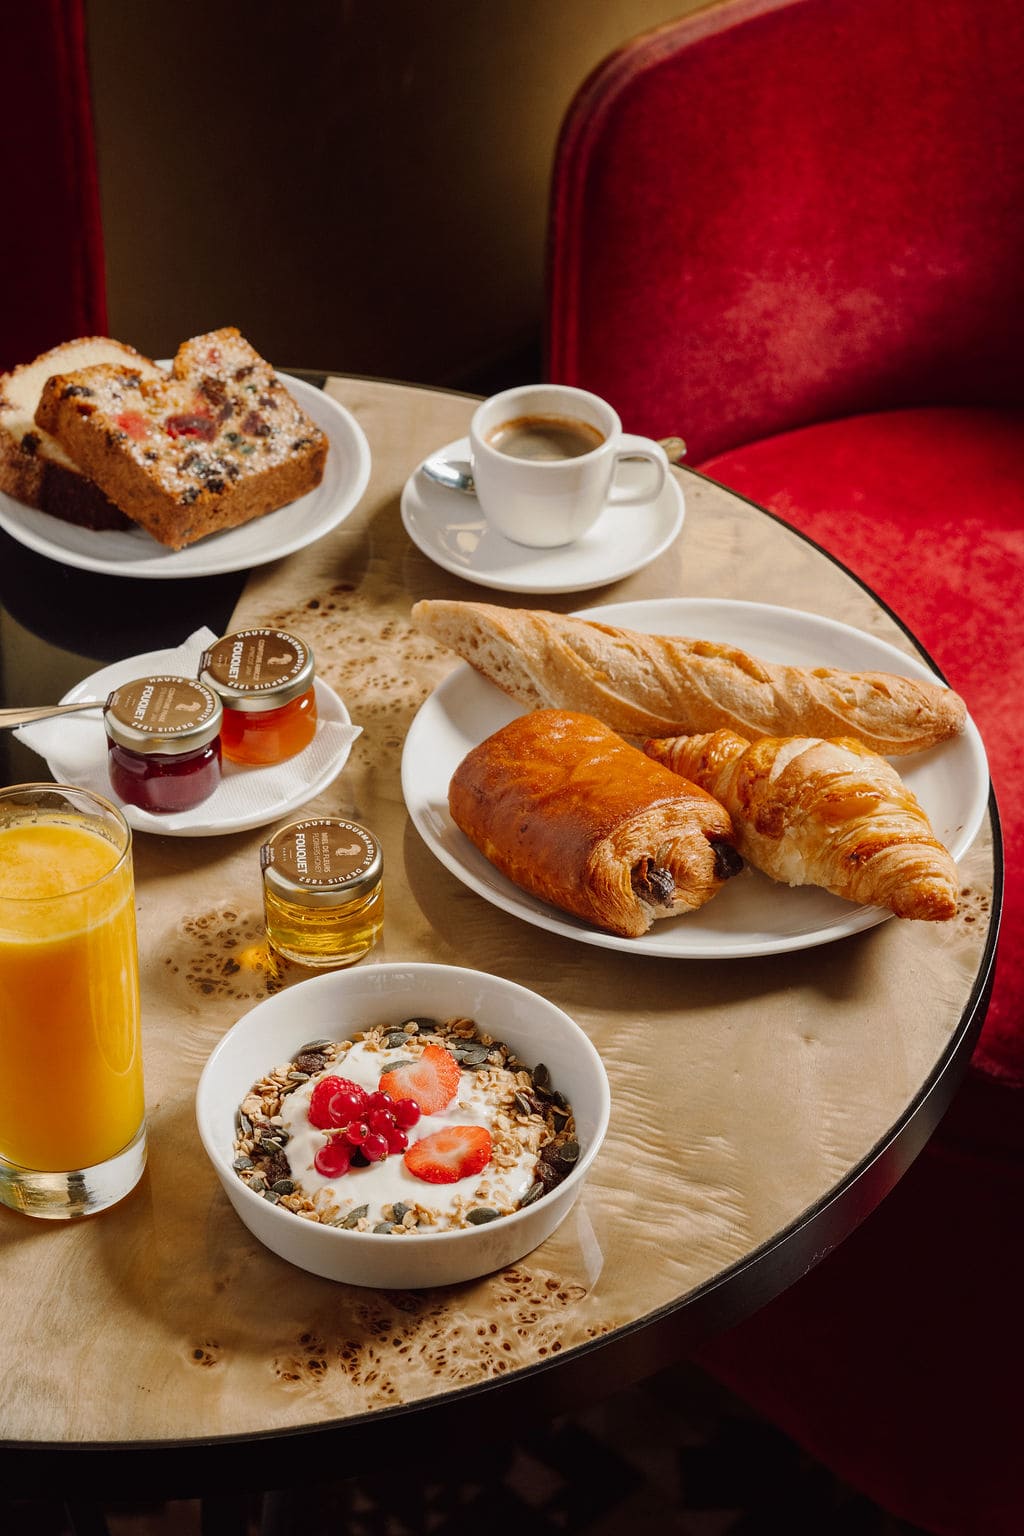 Sélection brunch et petit déjeuner du café français, avec des viennoiseries, confitures, cakes, pains, et jus de fruits frais.